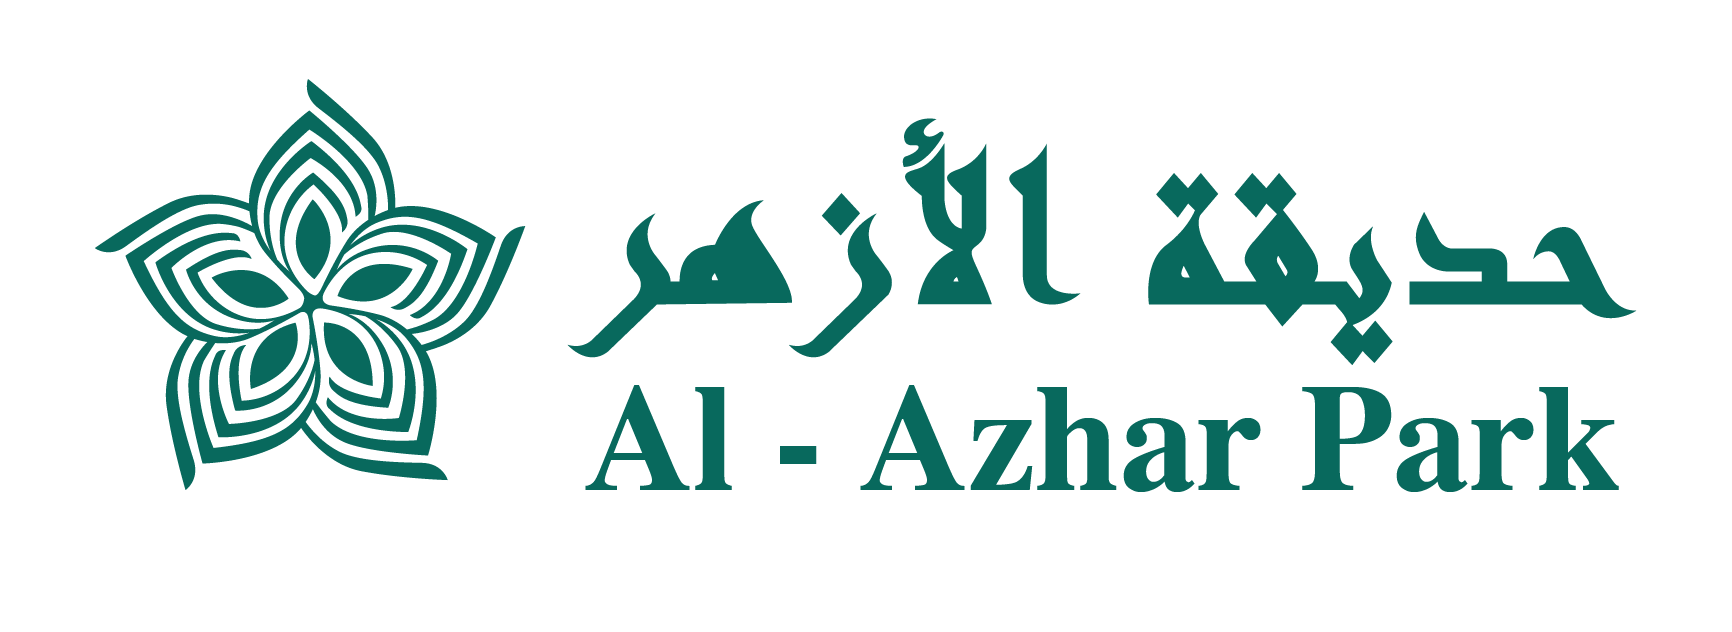 Al - Azhar Park